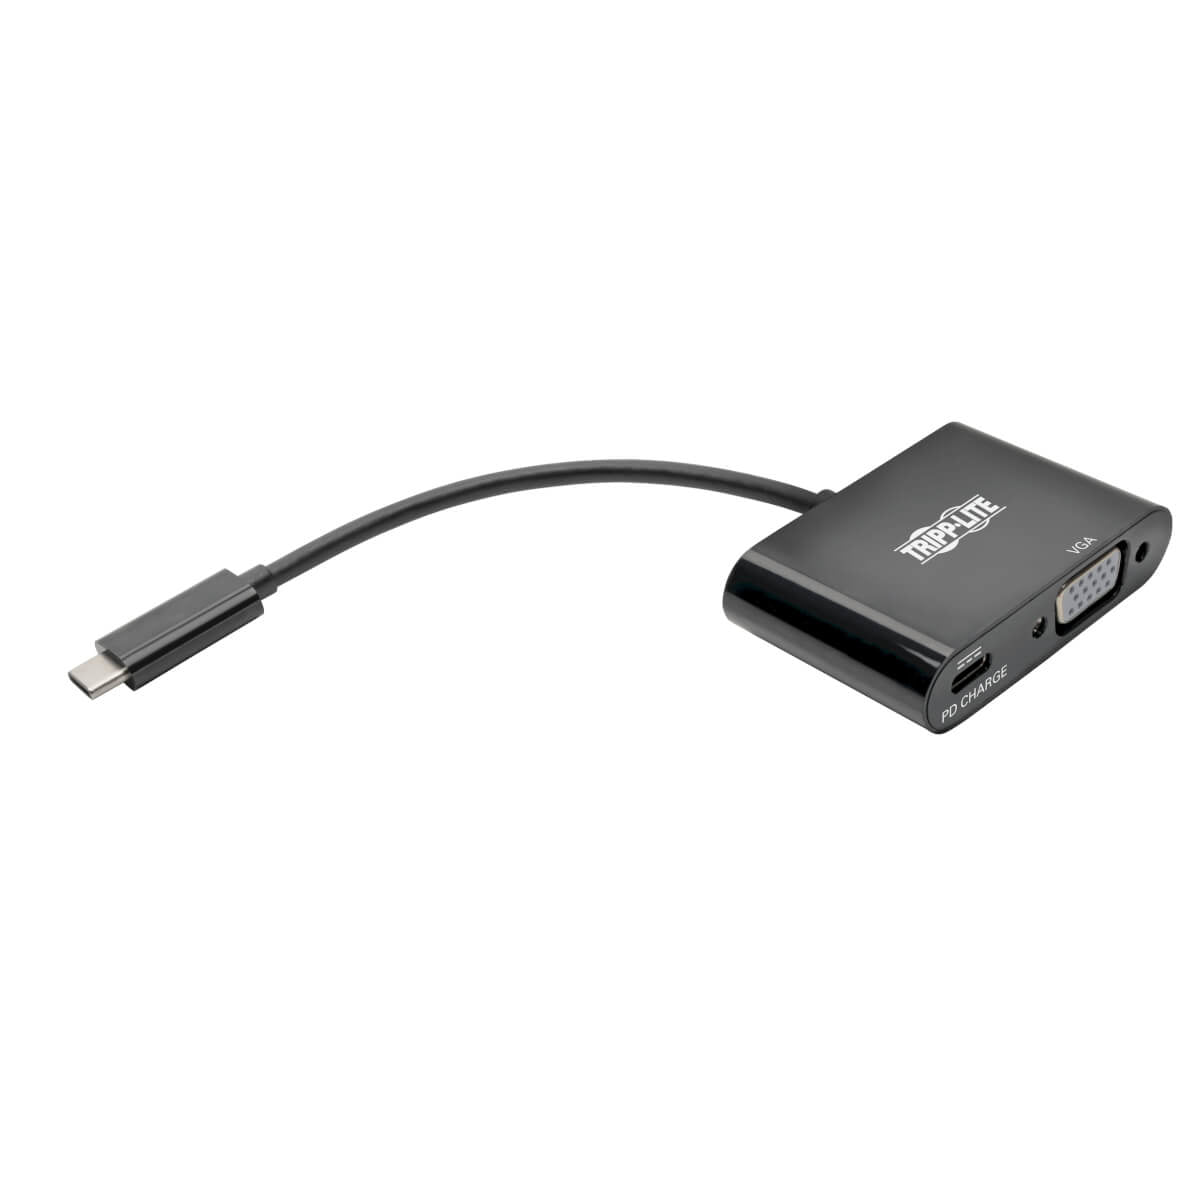 Adaptador Tripp Lite U444-06N-VB-C, USB C Macho - VGA Hembra, Compatible con Thunderbolt 3, Negro